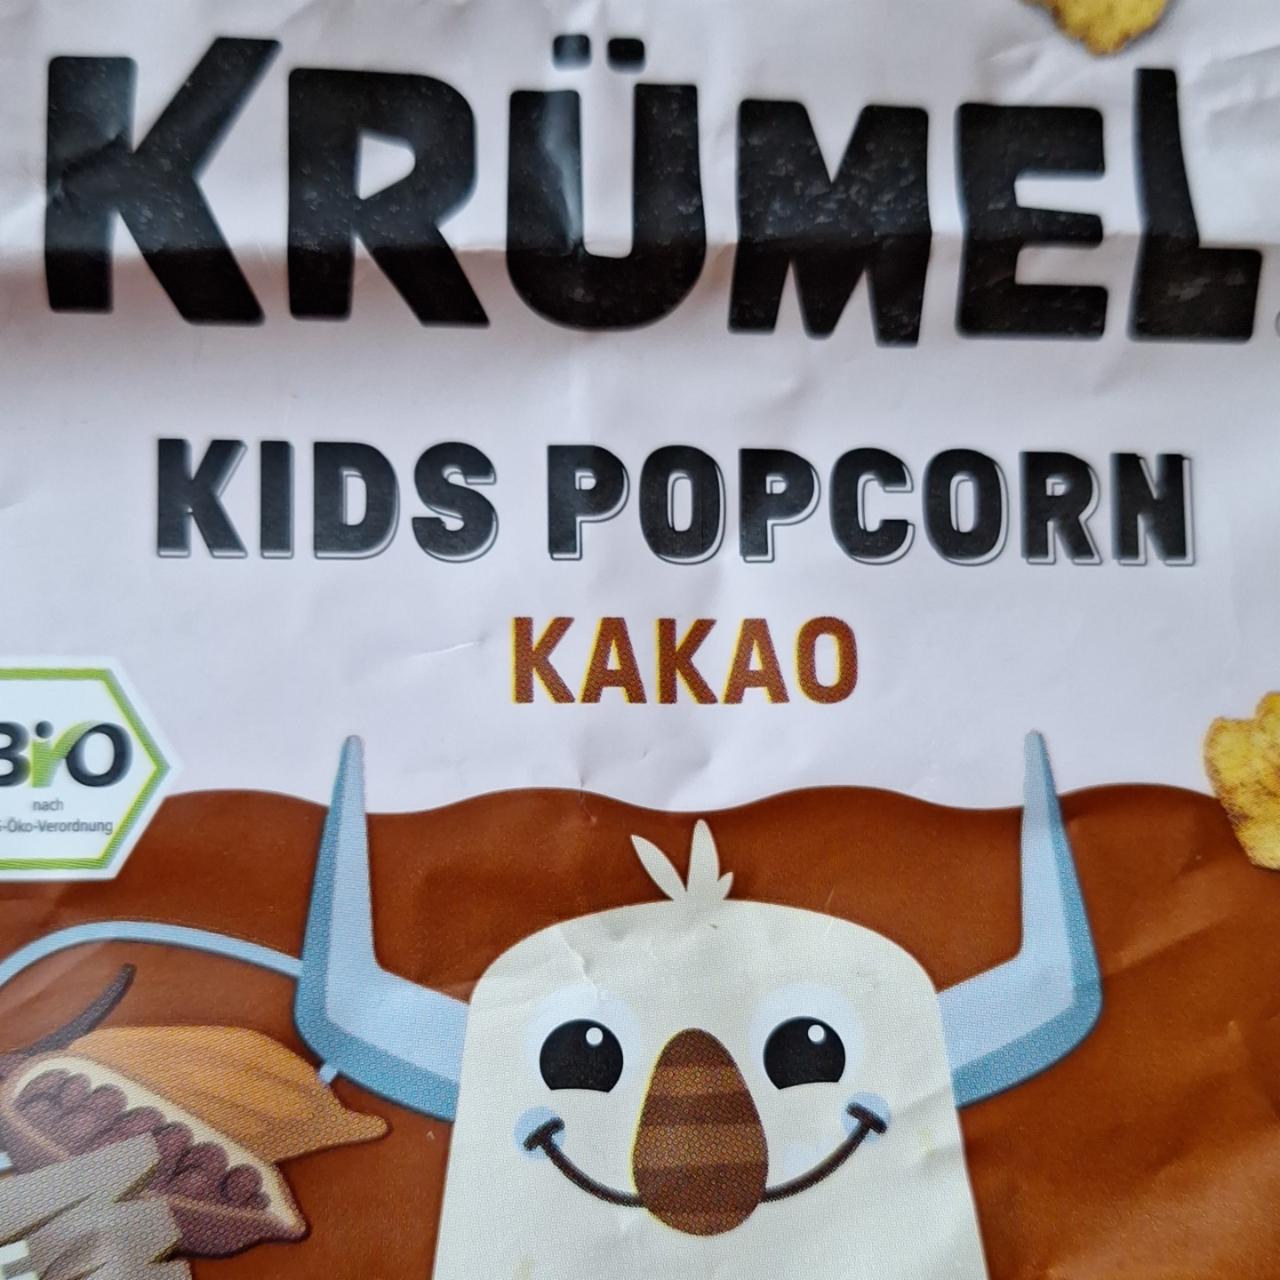 Fotografie - Kids Popcorn Kakao Krümel